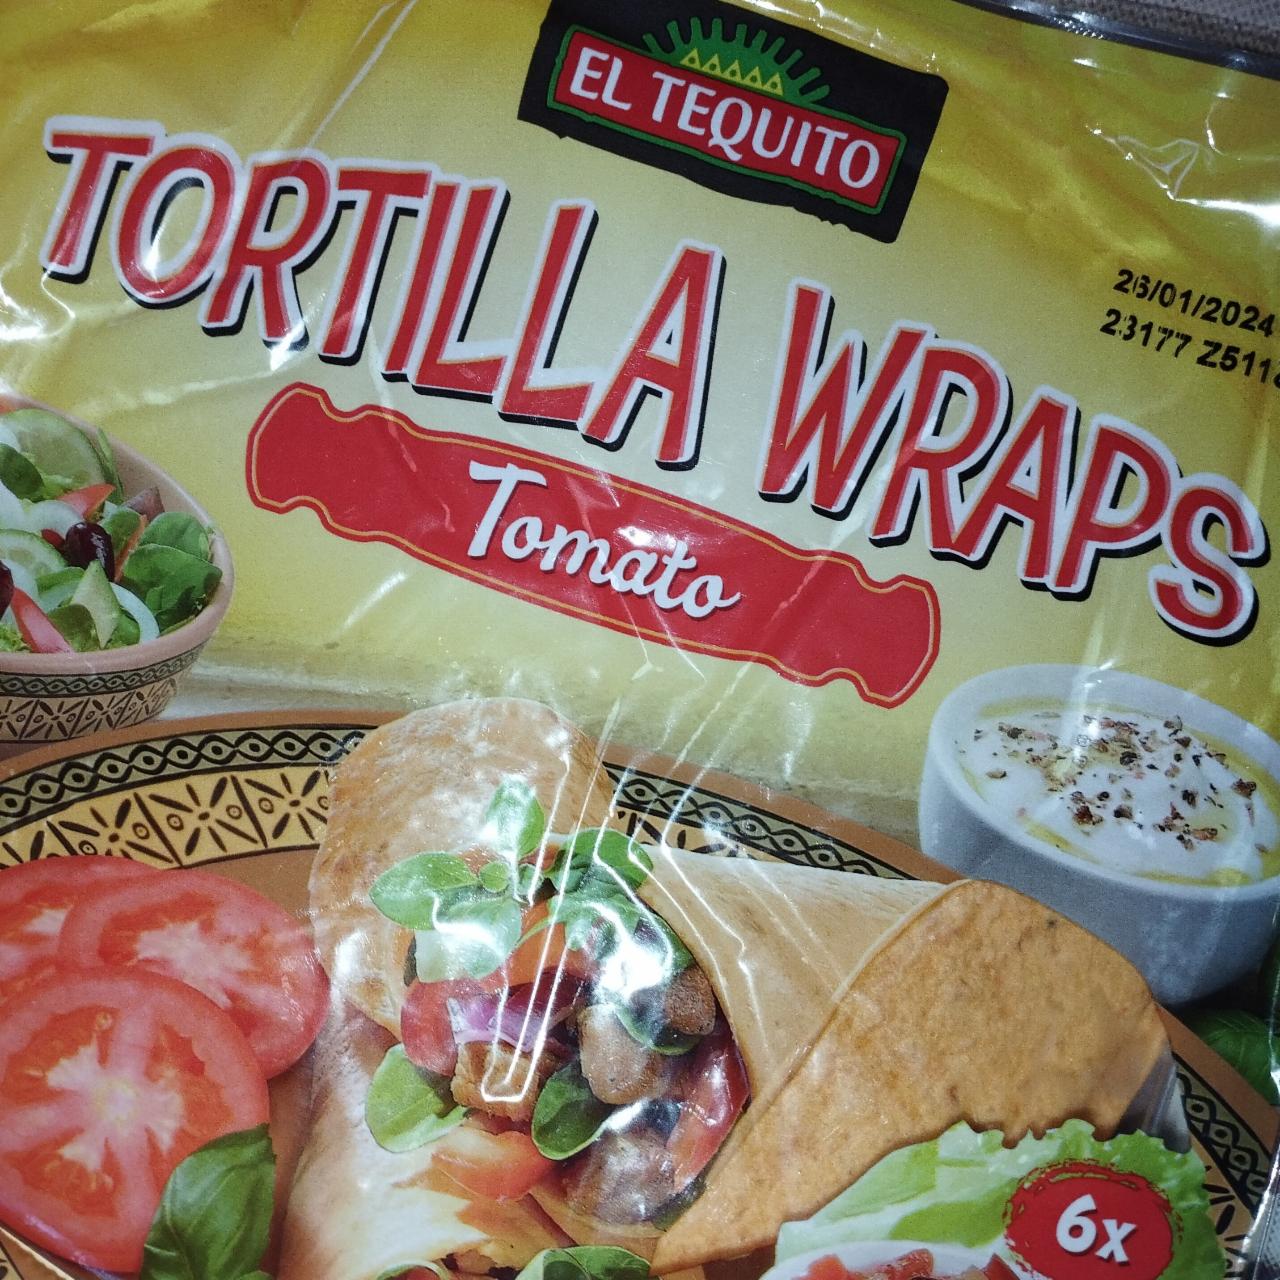 Fotografie - Tortilla wraps tomato El Tequito